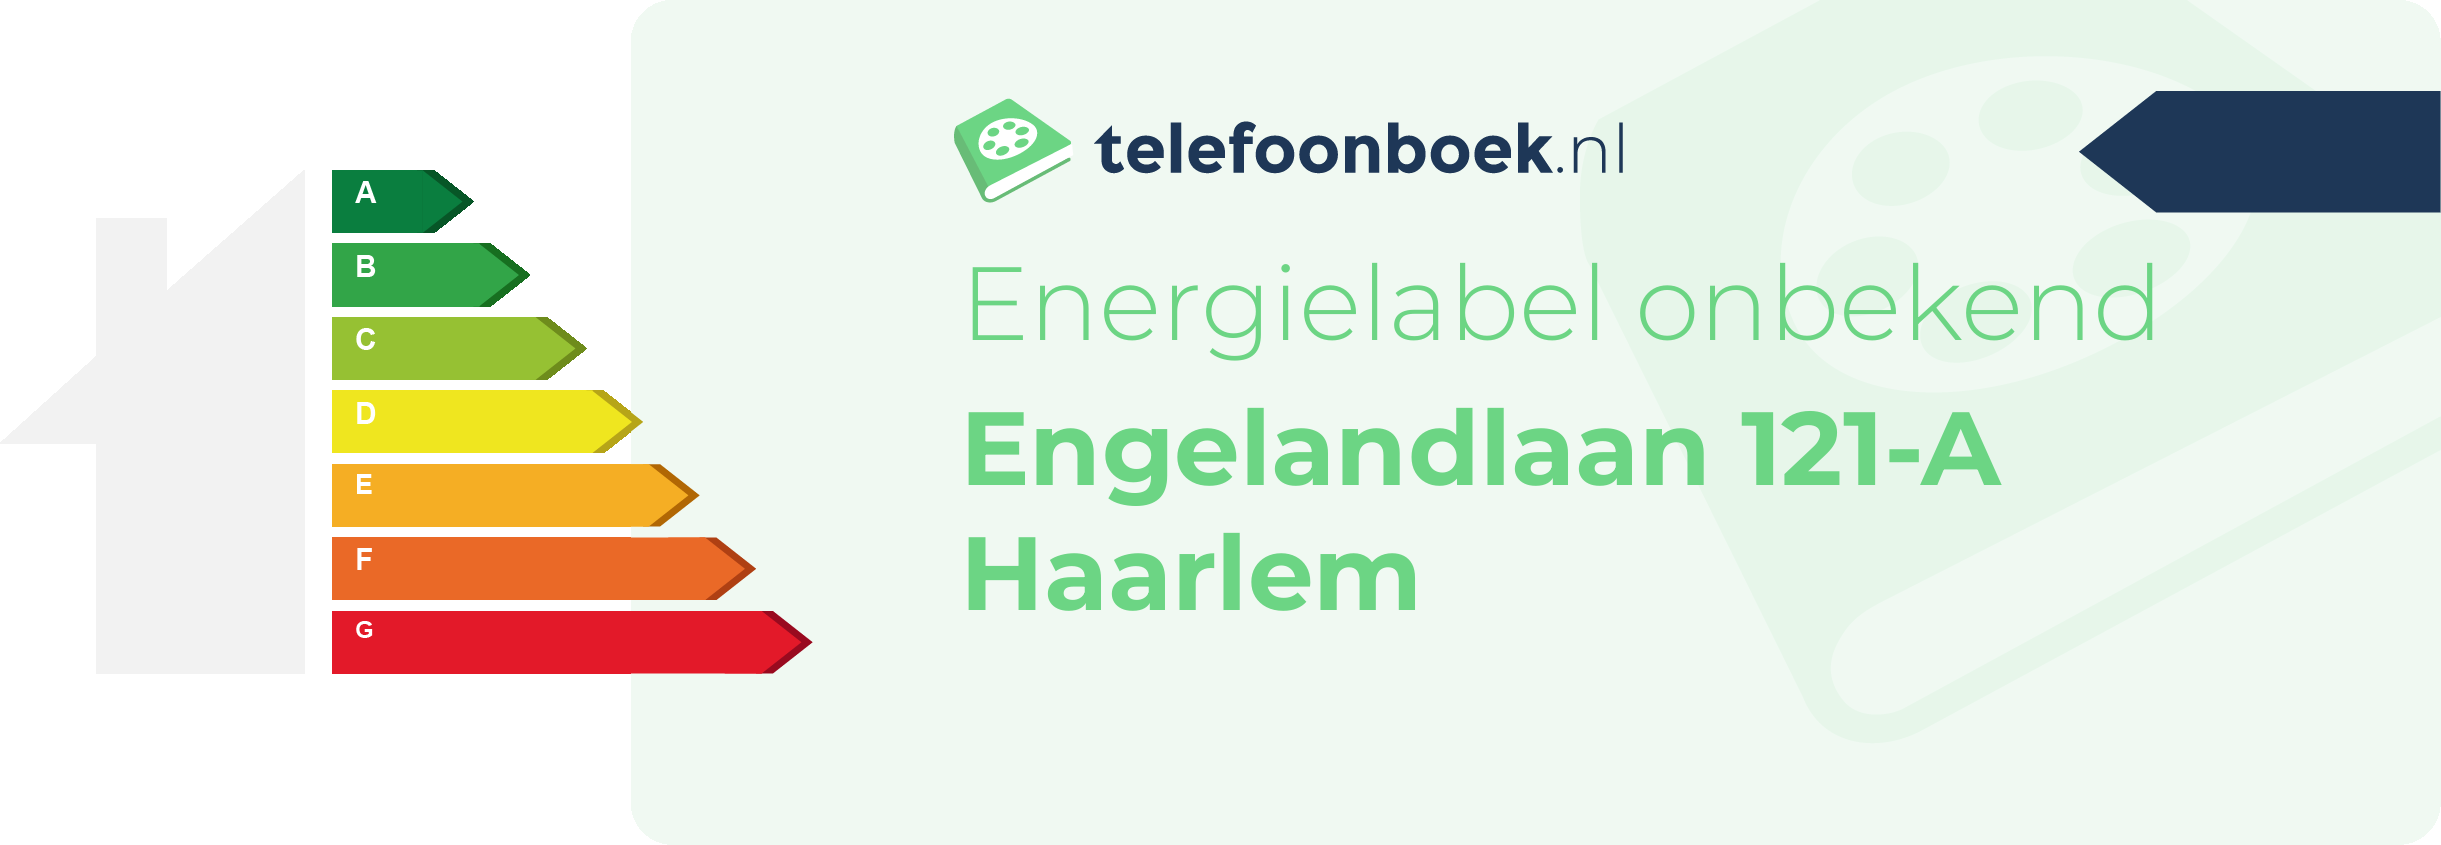 Energielabel Engelandlaan 121-A Haarlem